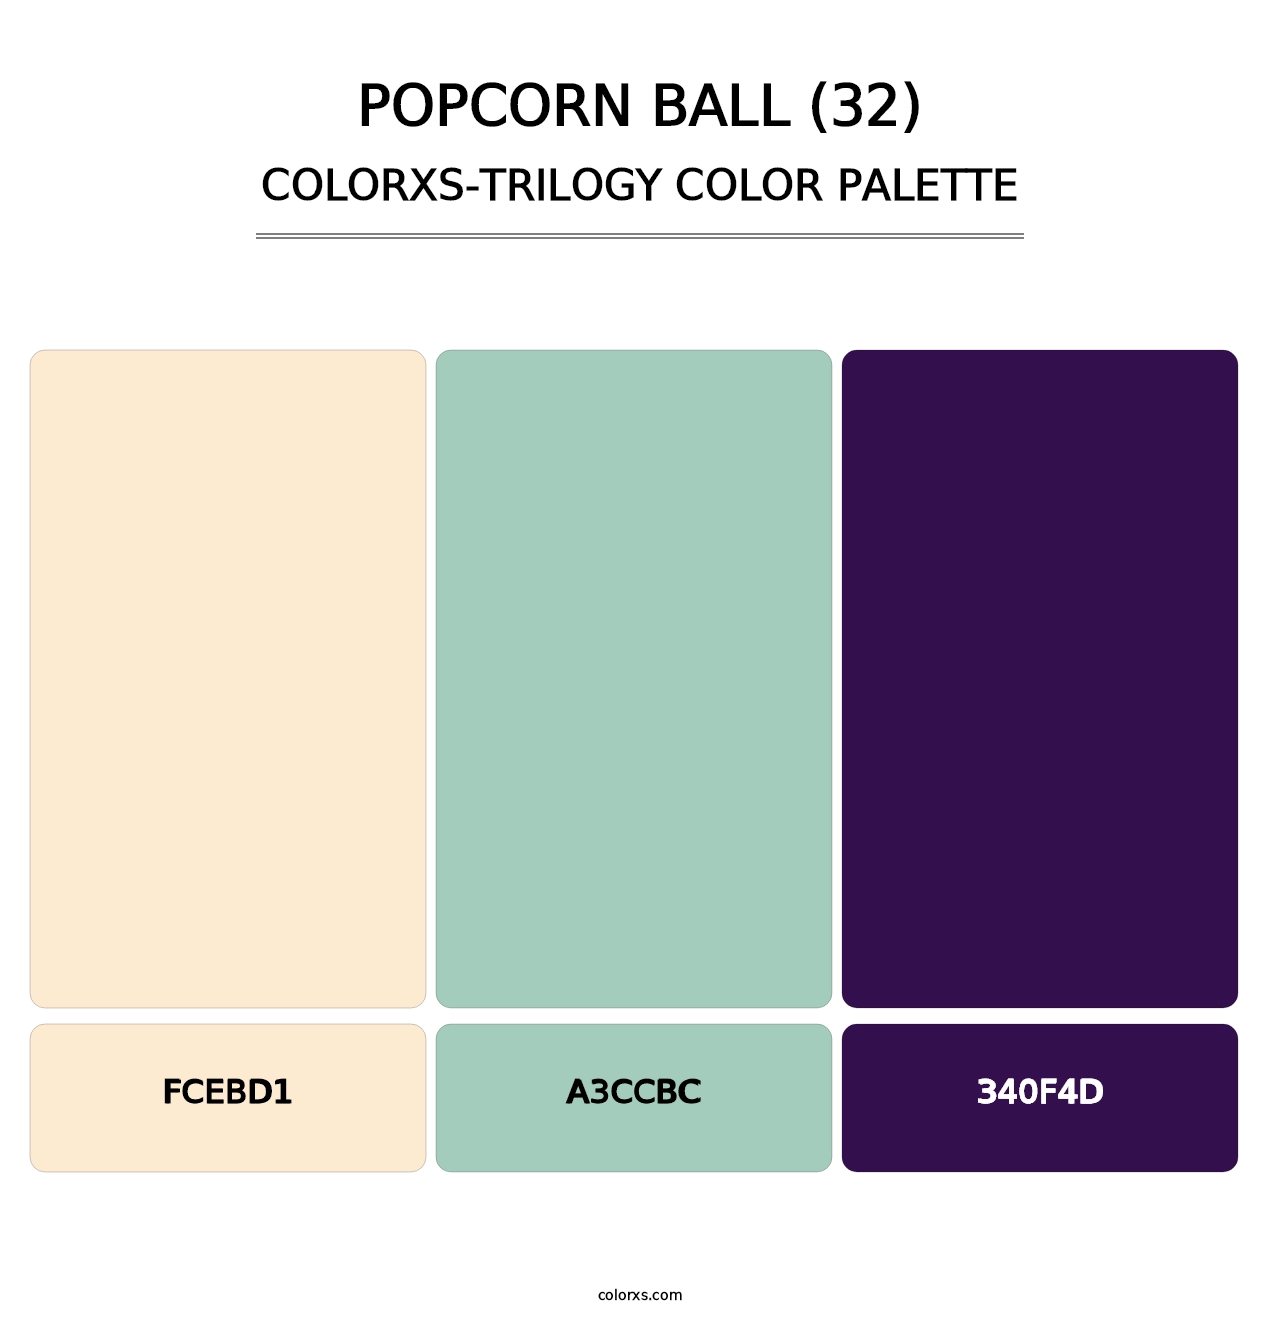 Popcorn Ball (32) - Colorxs Trilogy Palette